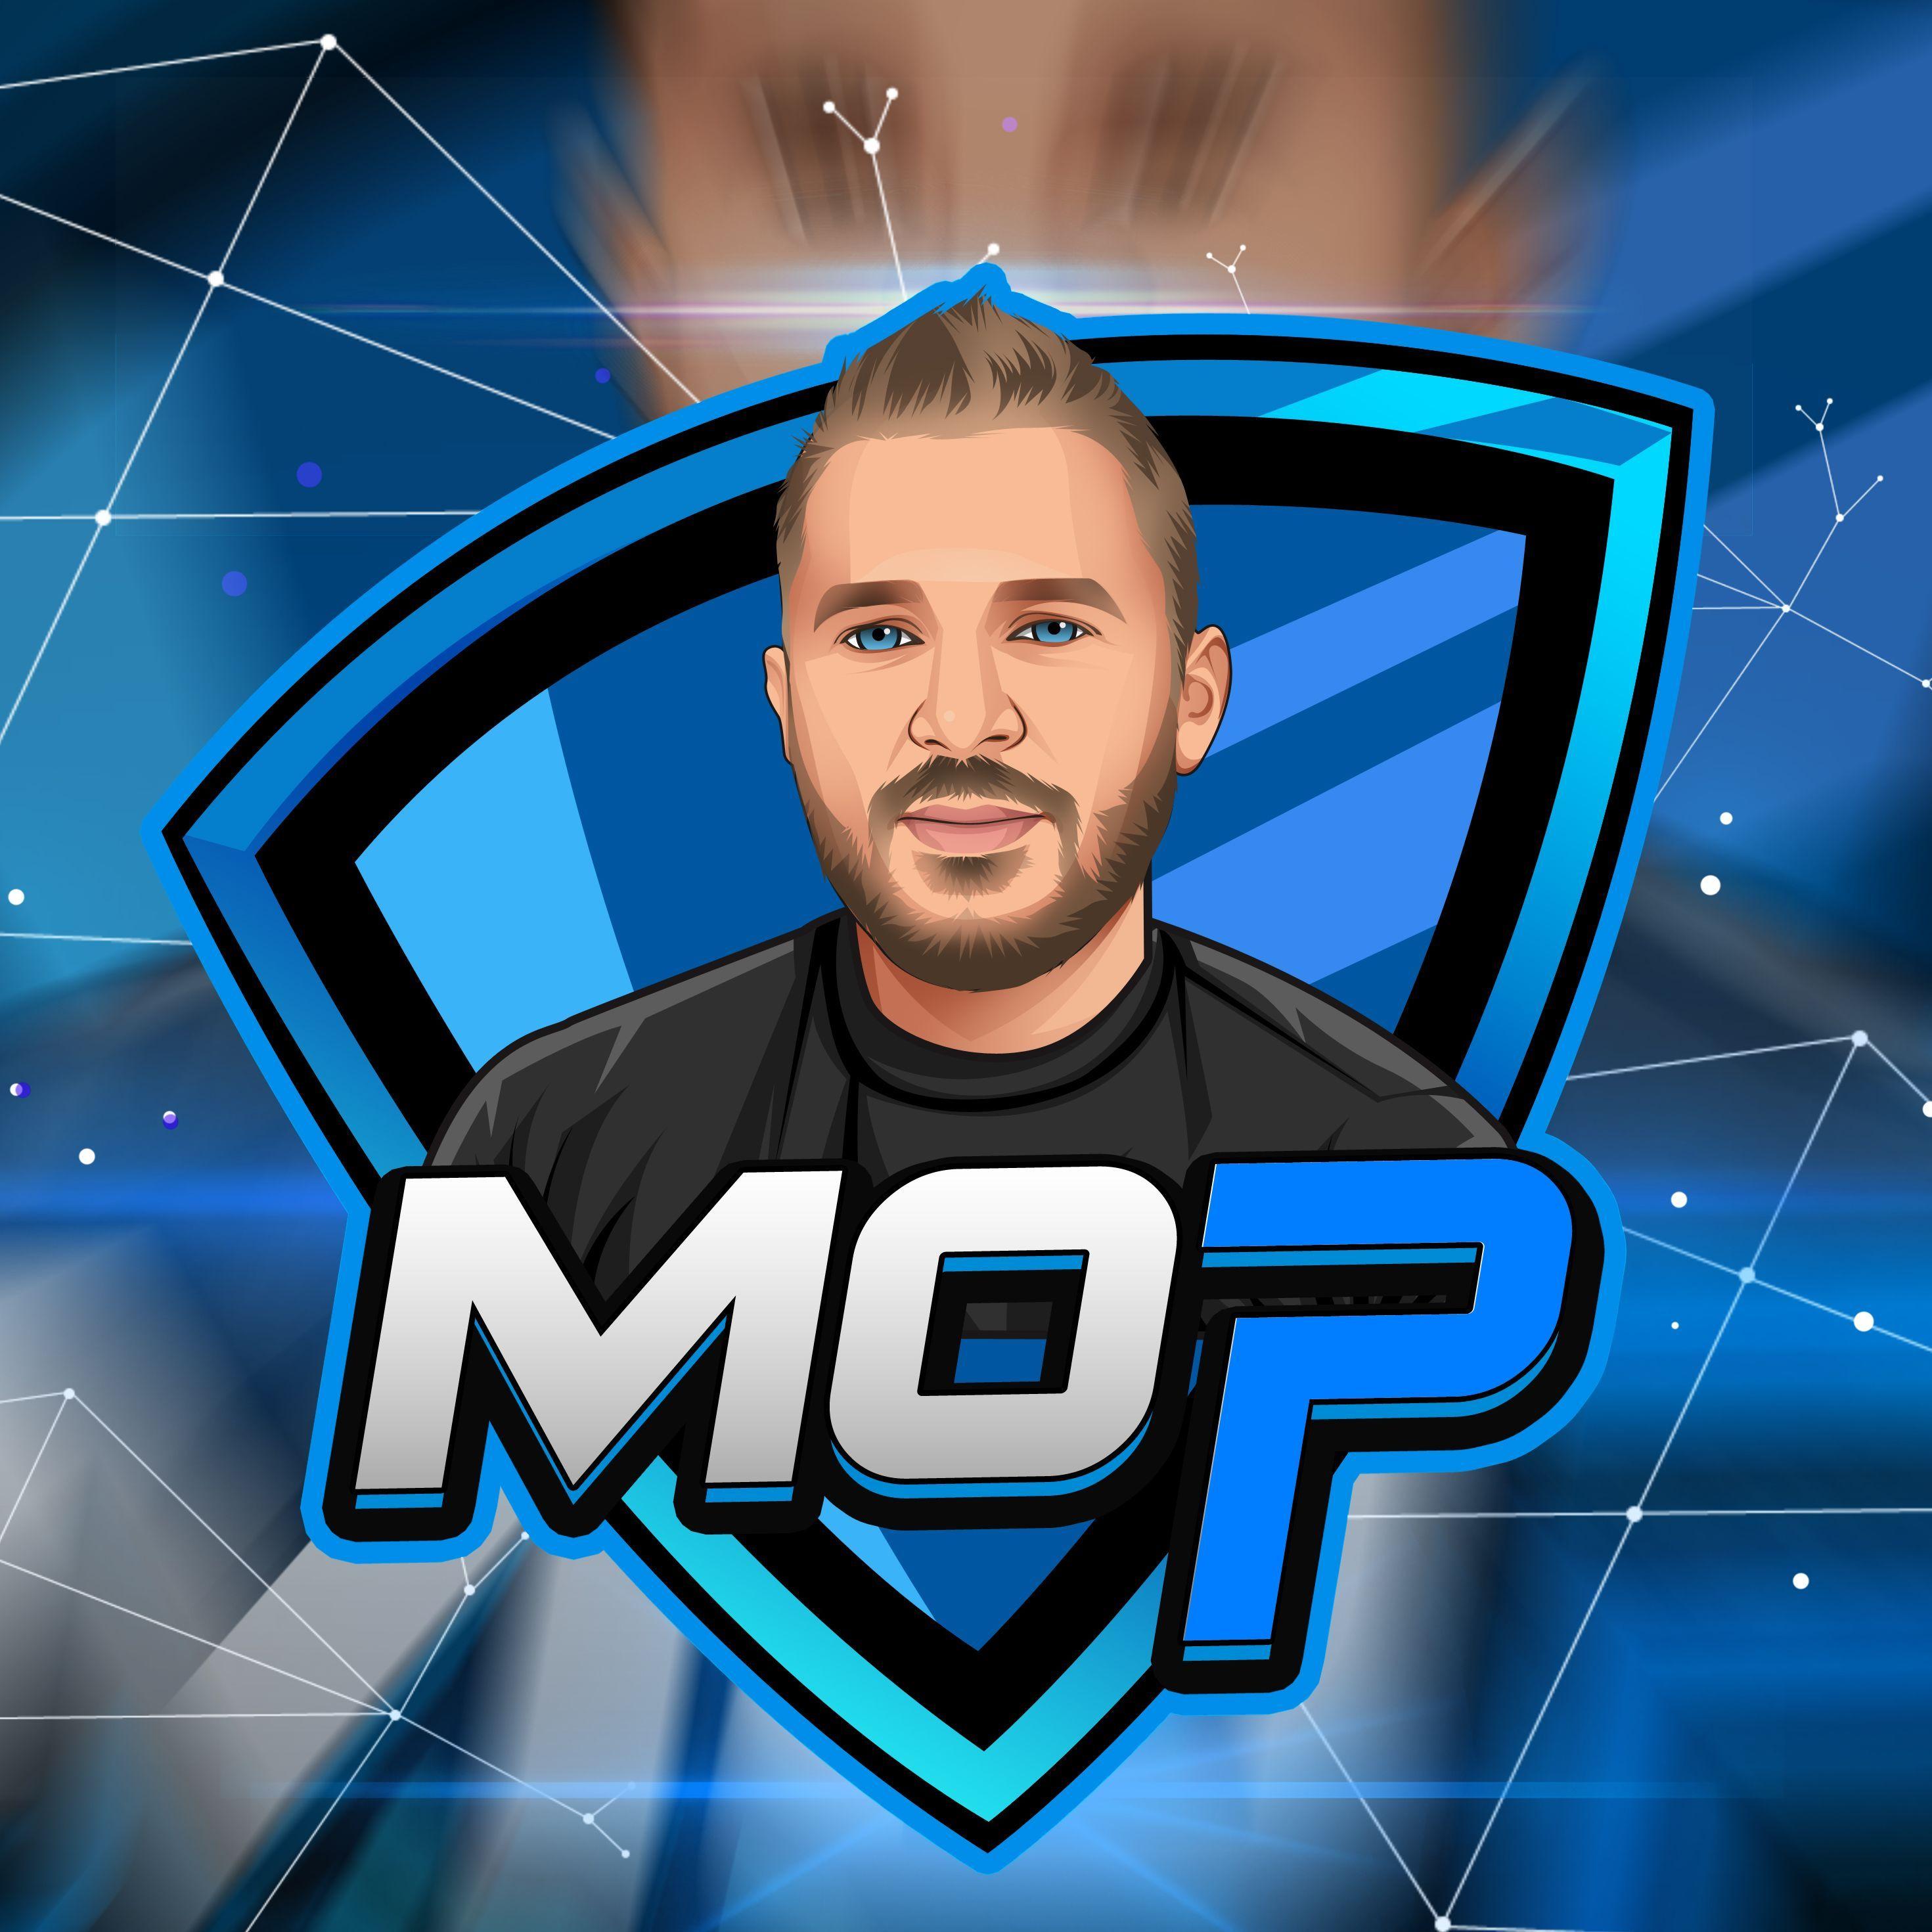 Player moP avatar